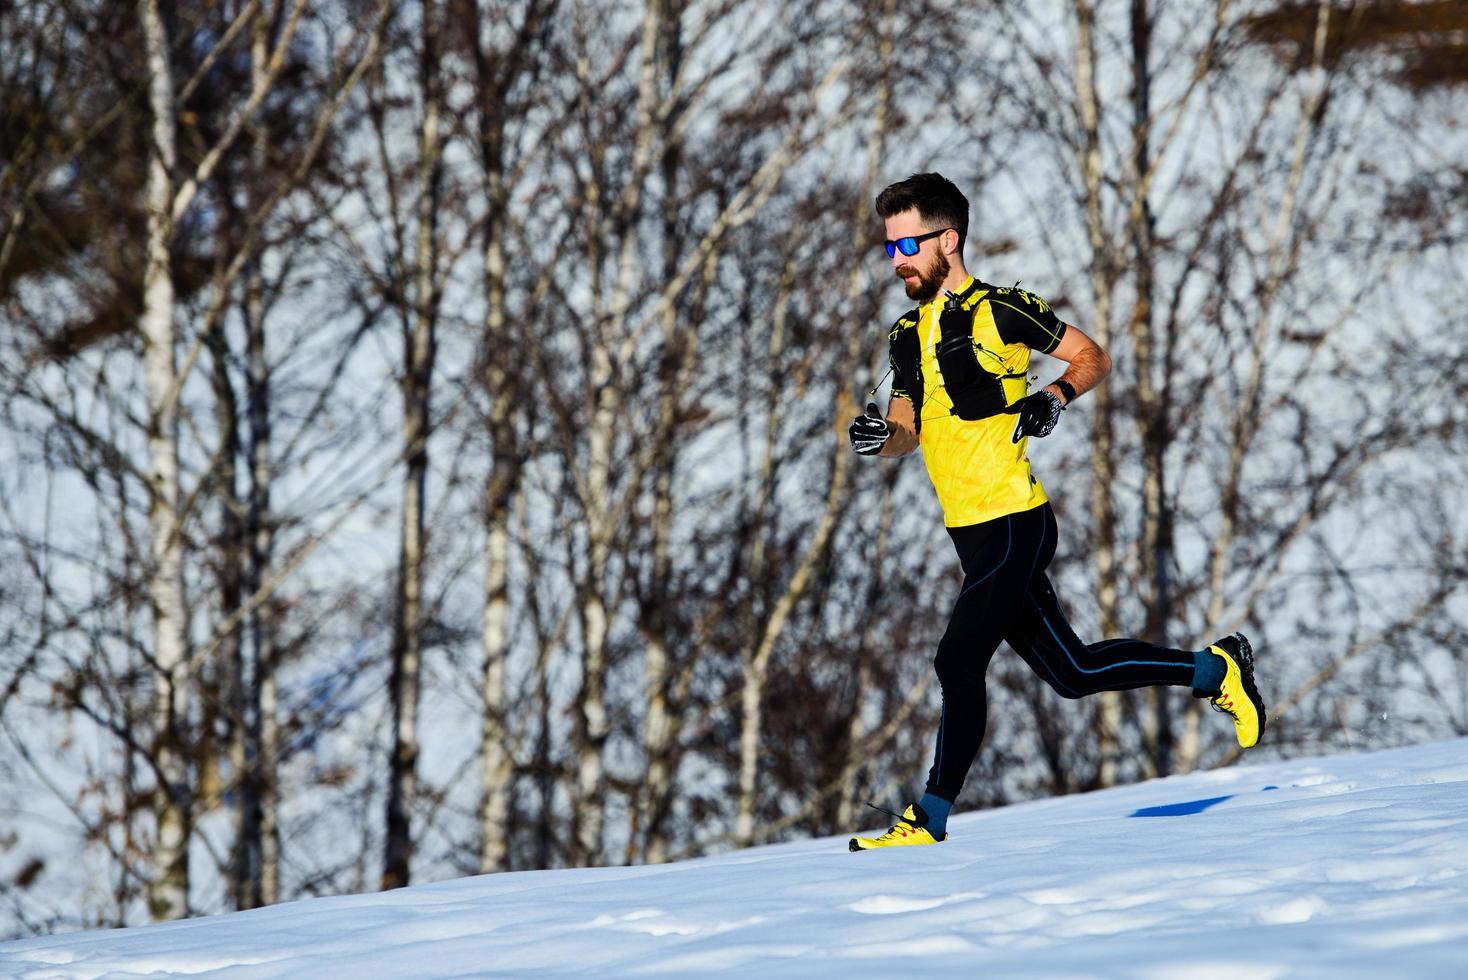 corriendo entrenando en la nieve un atleta cuesta abajo foto